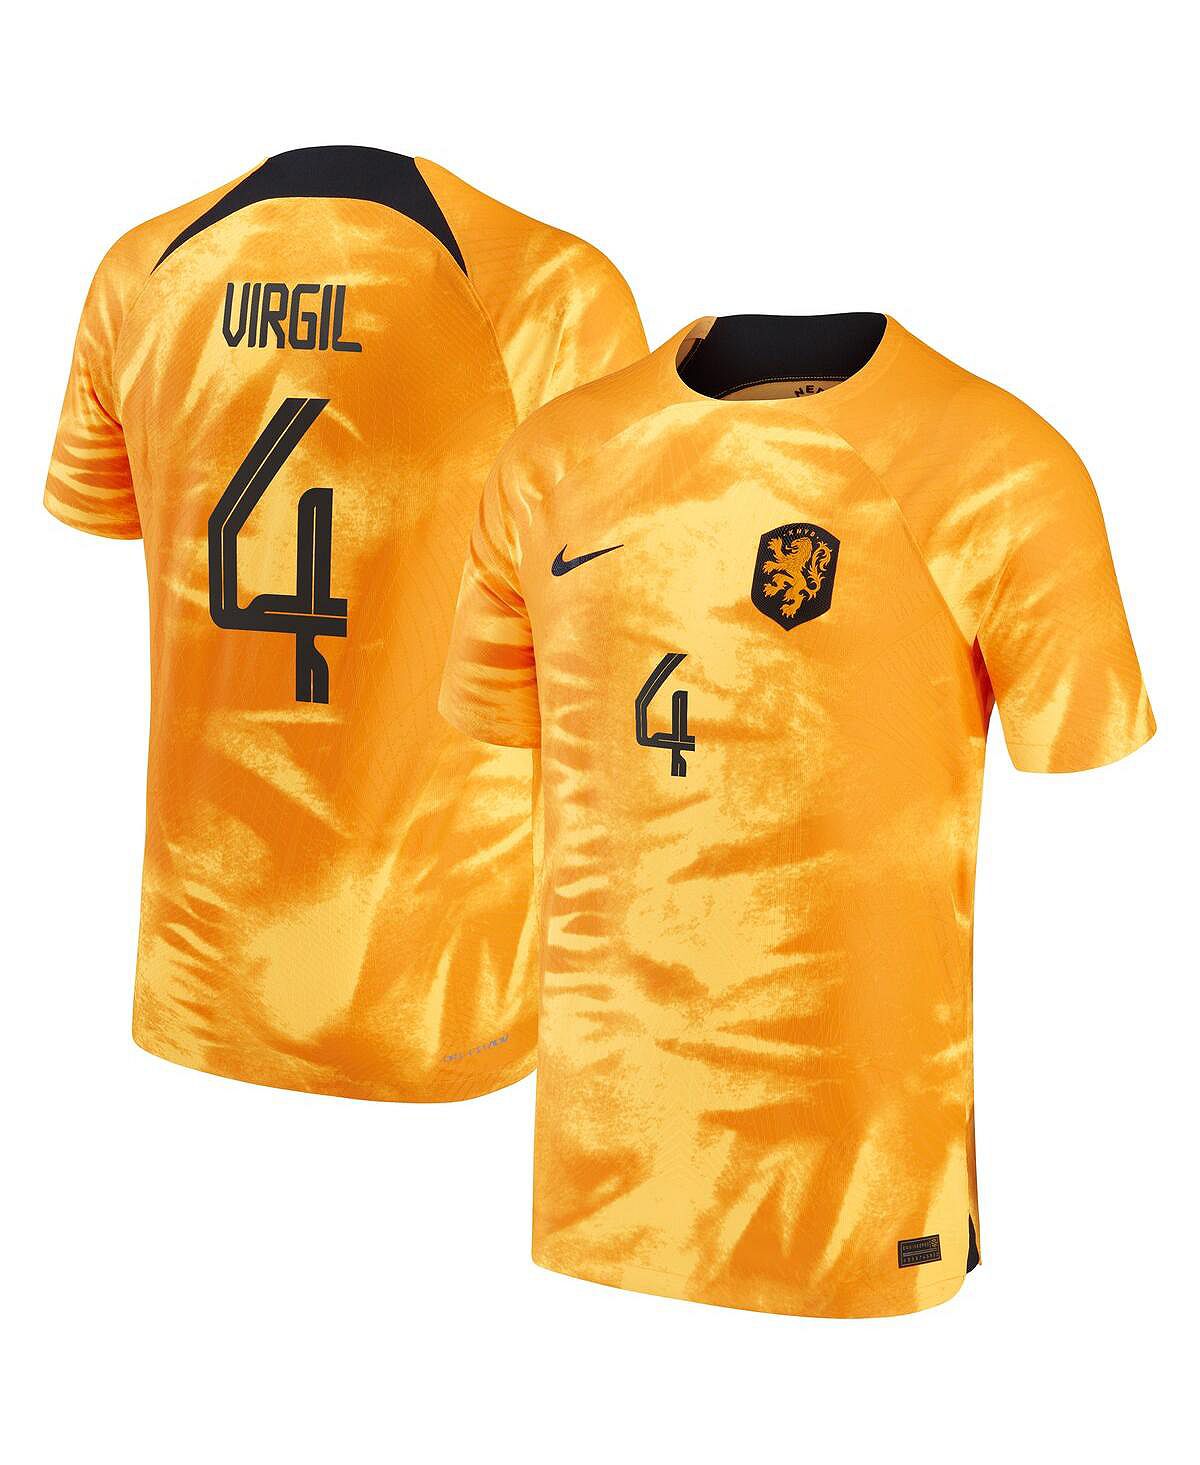 Мужская футболка virgil van dijk orange, сборная нидерландов 2022/23 home vapor match, аутентичная футболка игрока Nike